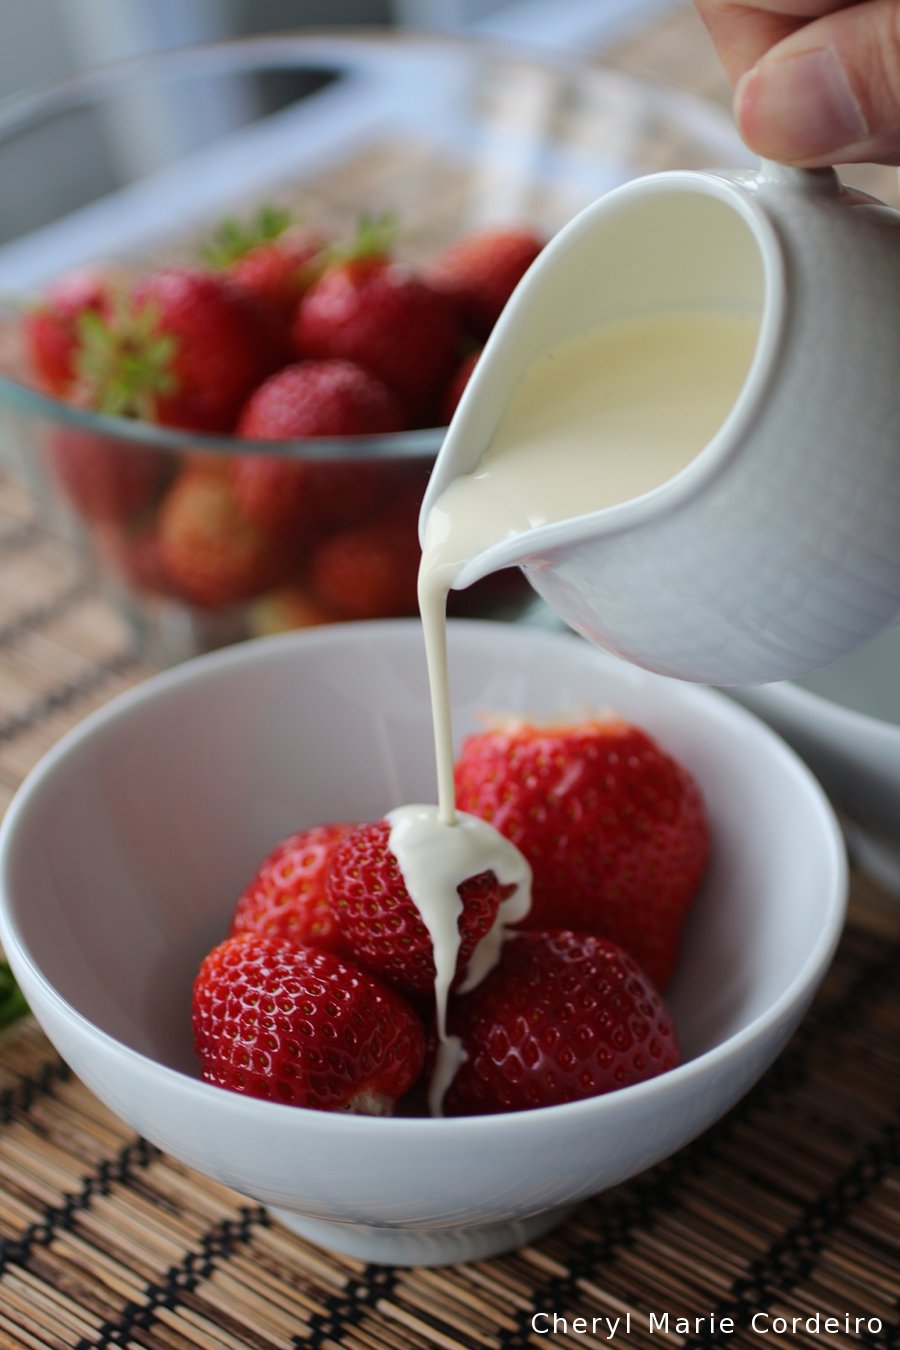 Cheryl Marie Cordeiro, strawberry harvest, strawberries and cream, 2015